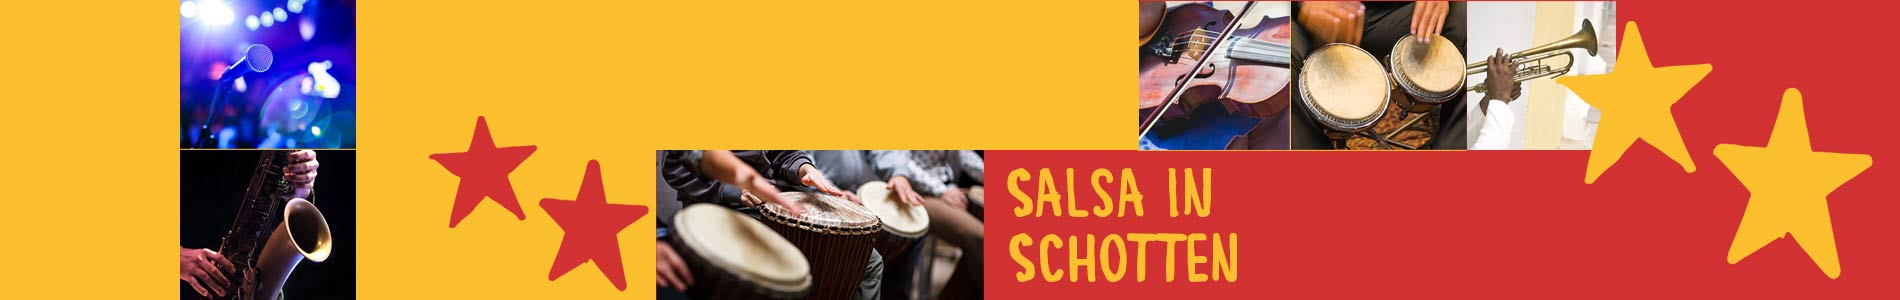 Salsa in Schotten – Salsa lernen und tanzen, Tanzkurse, Partys, Veranstaltungen